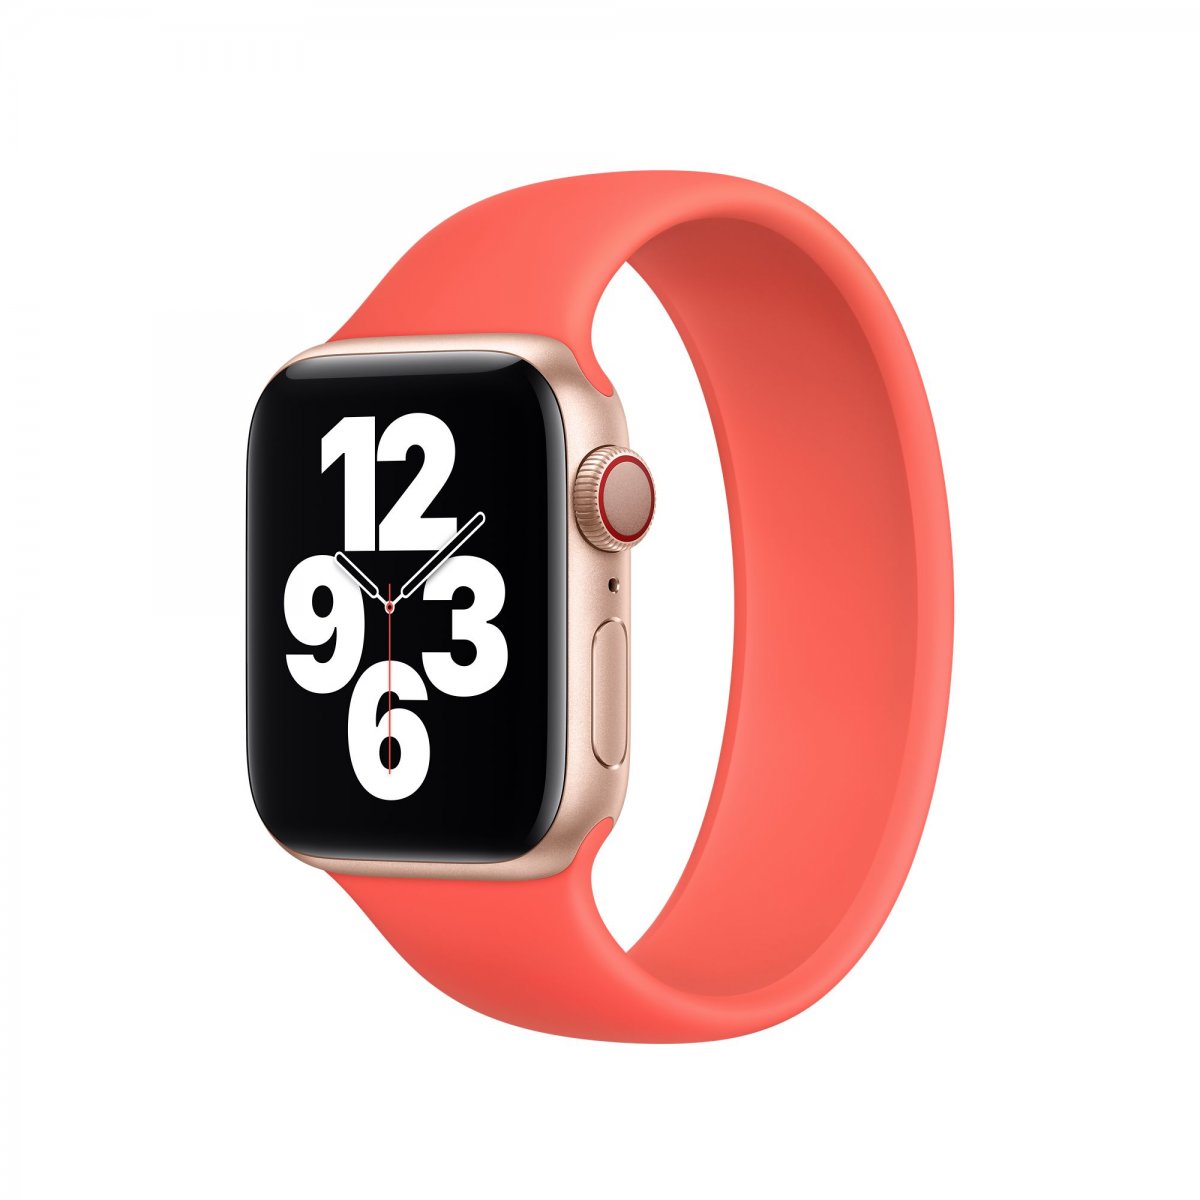 Řemínek iMore Solo Loop Apple Watch Series 1/2/3 42mm - Citrusově růžová (M)